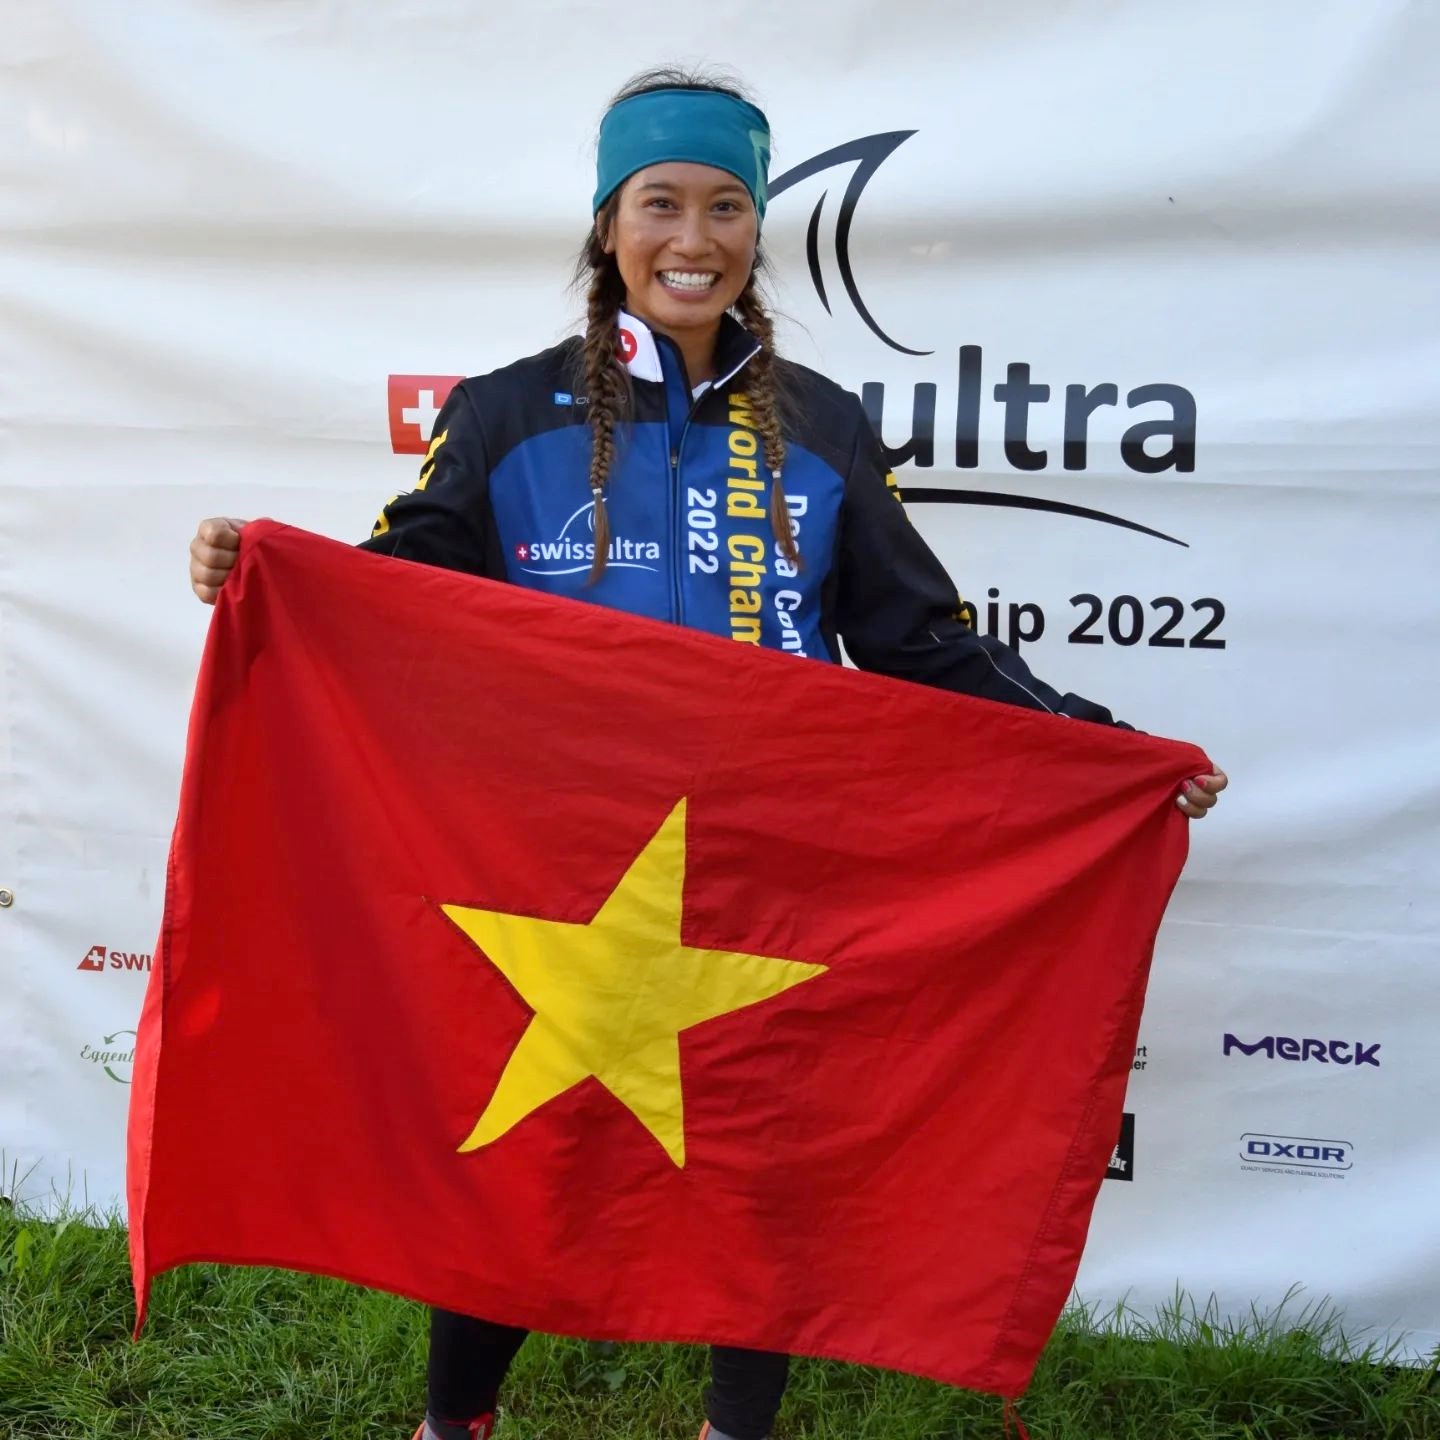 Vietnamese woman wins grand triathlon in Switzerland